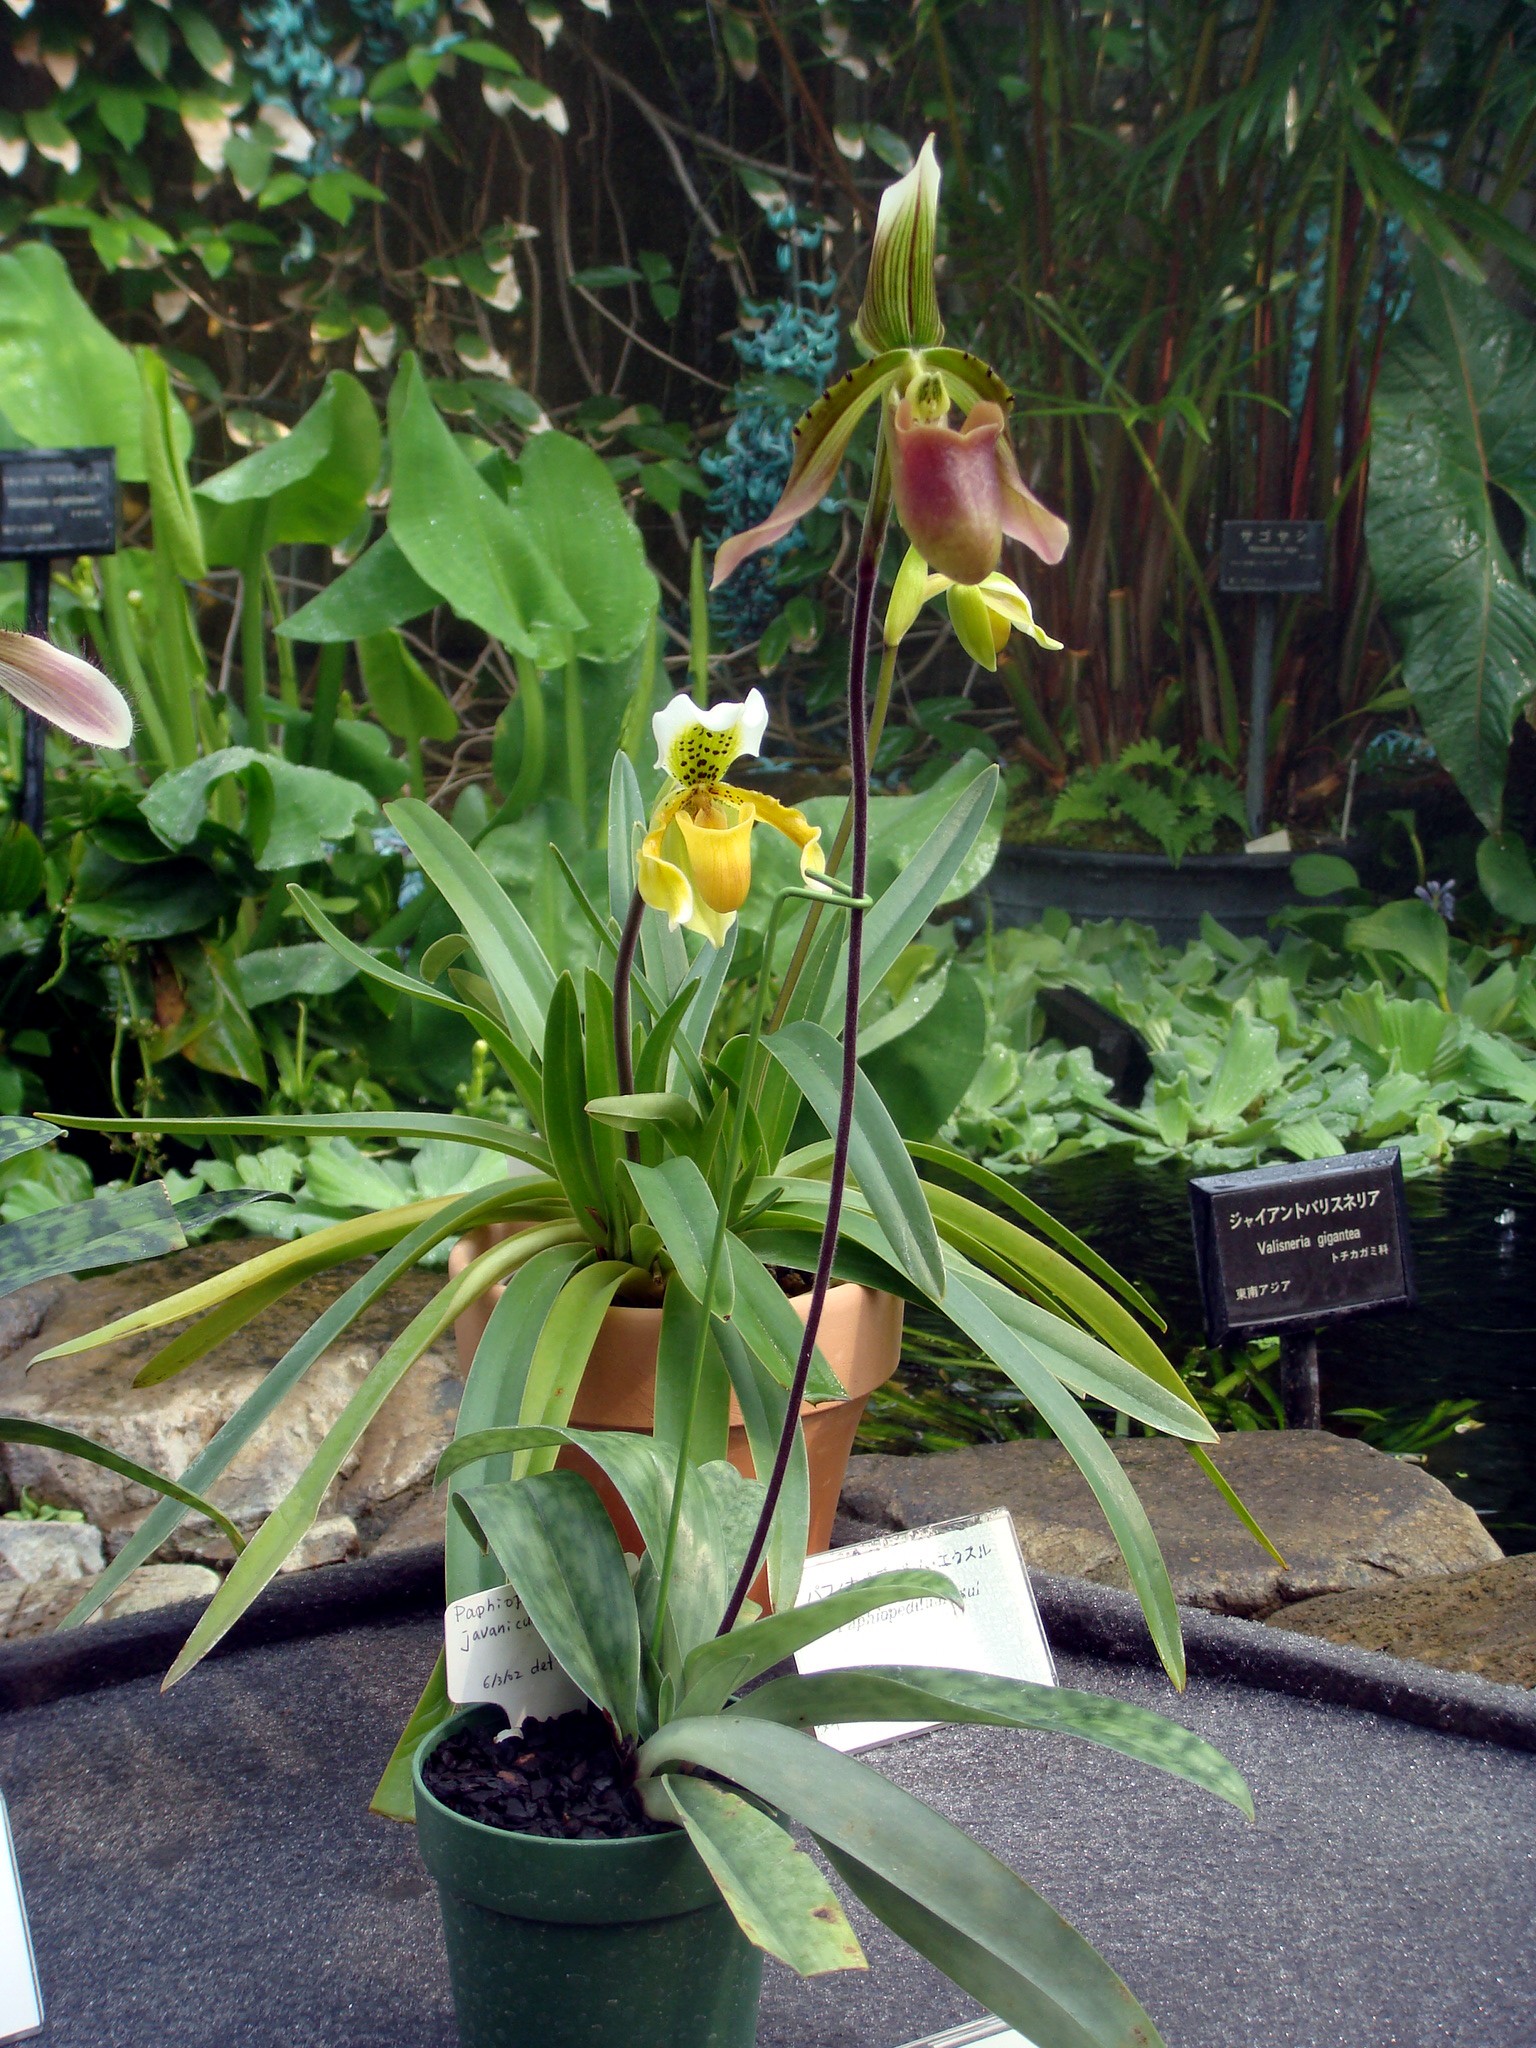 http://orchids.la.coocan.jp/Paphiopedilum/Paphiopedilum%20javanicum%20virens/DSC05446.JPG